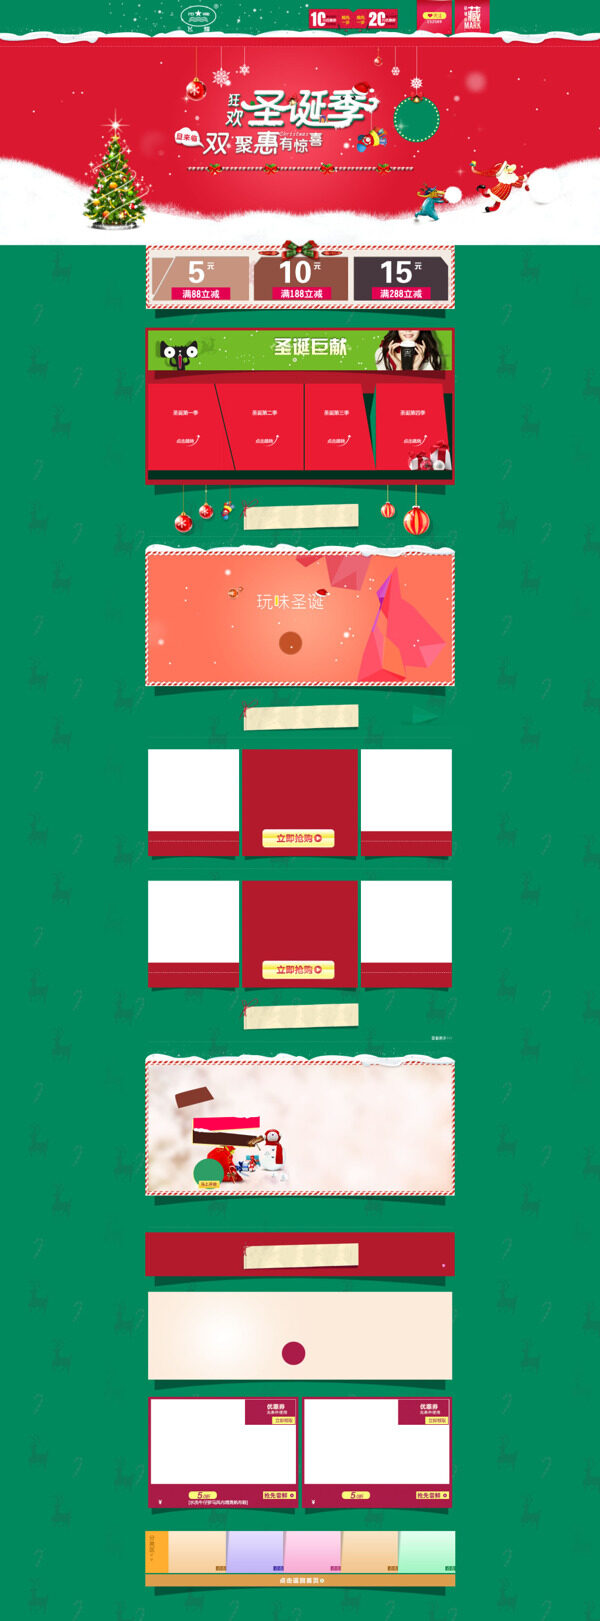 圣诞节天猫店铺装修模板海报